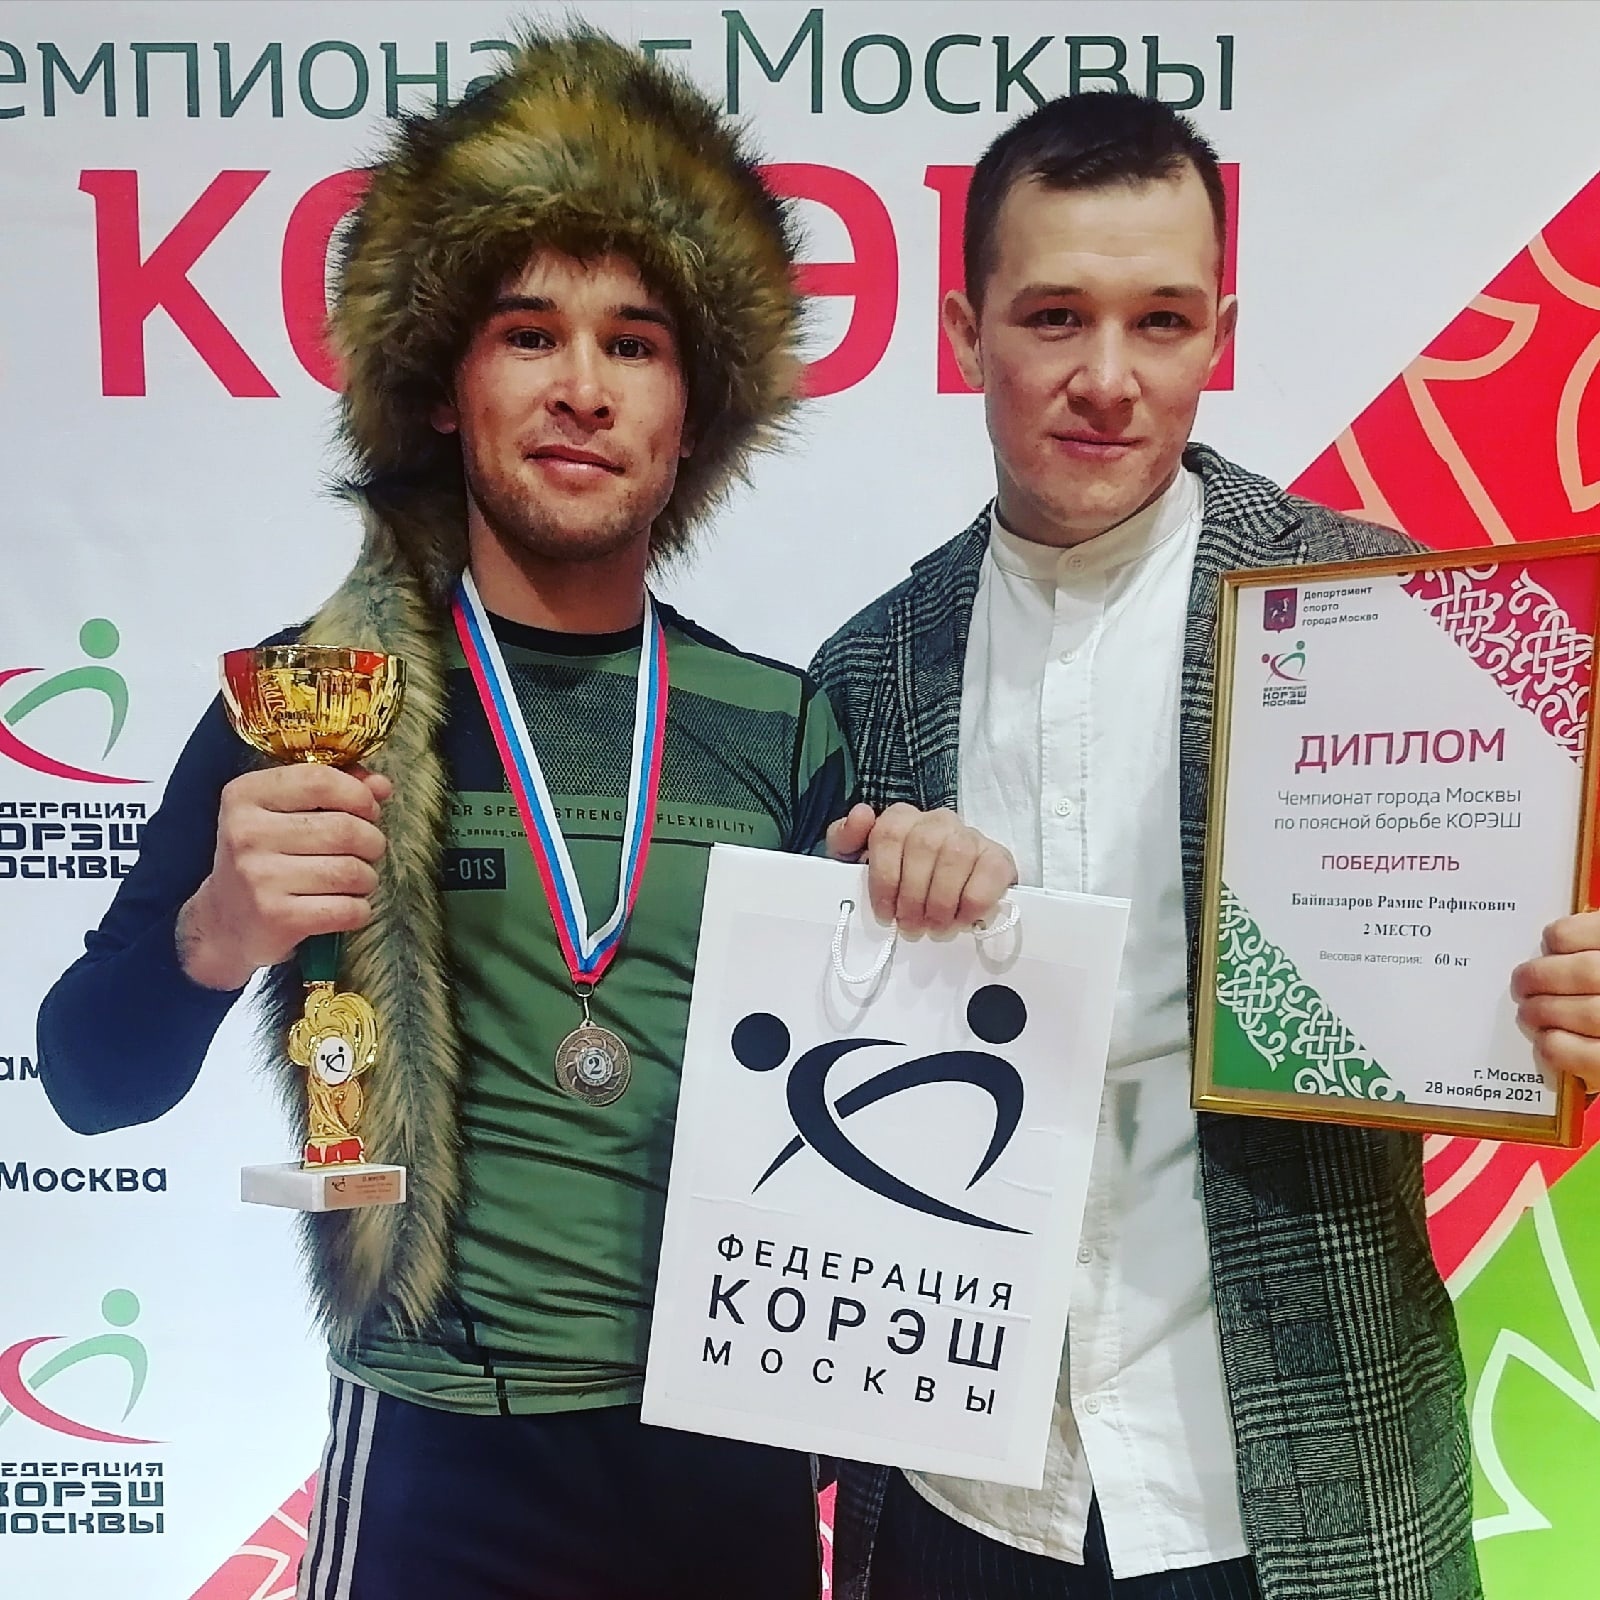 Бурзянский богатырь стал призером в Чемпионате Москвы по борьбе Корэш